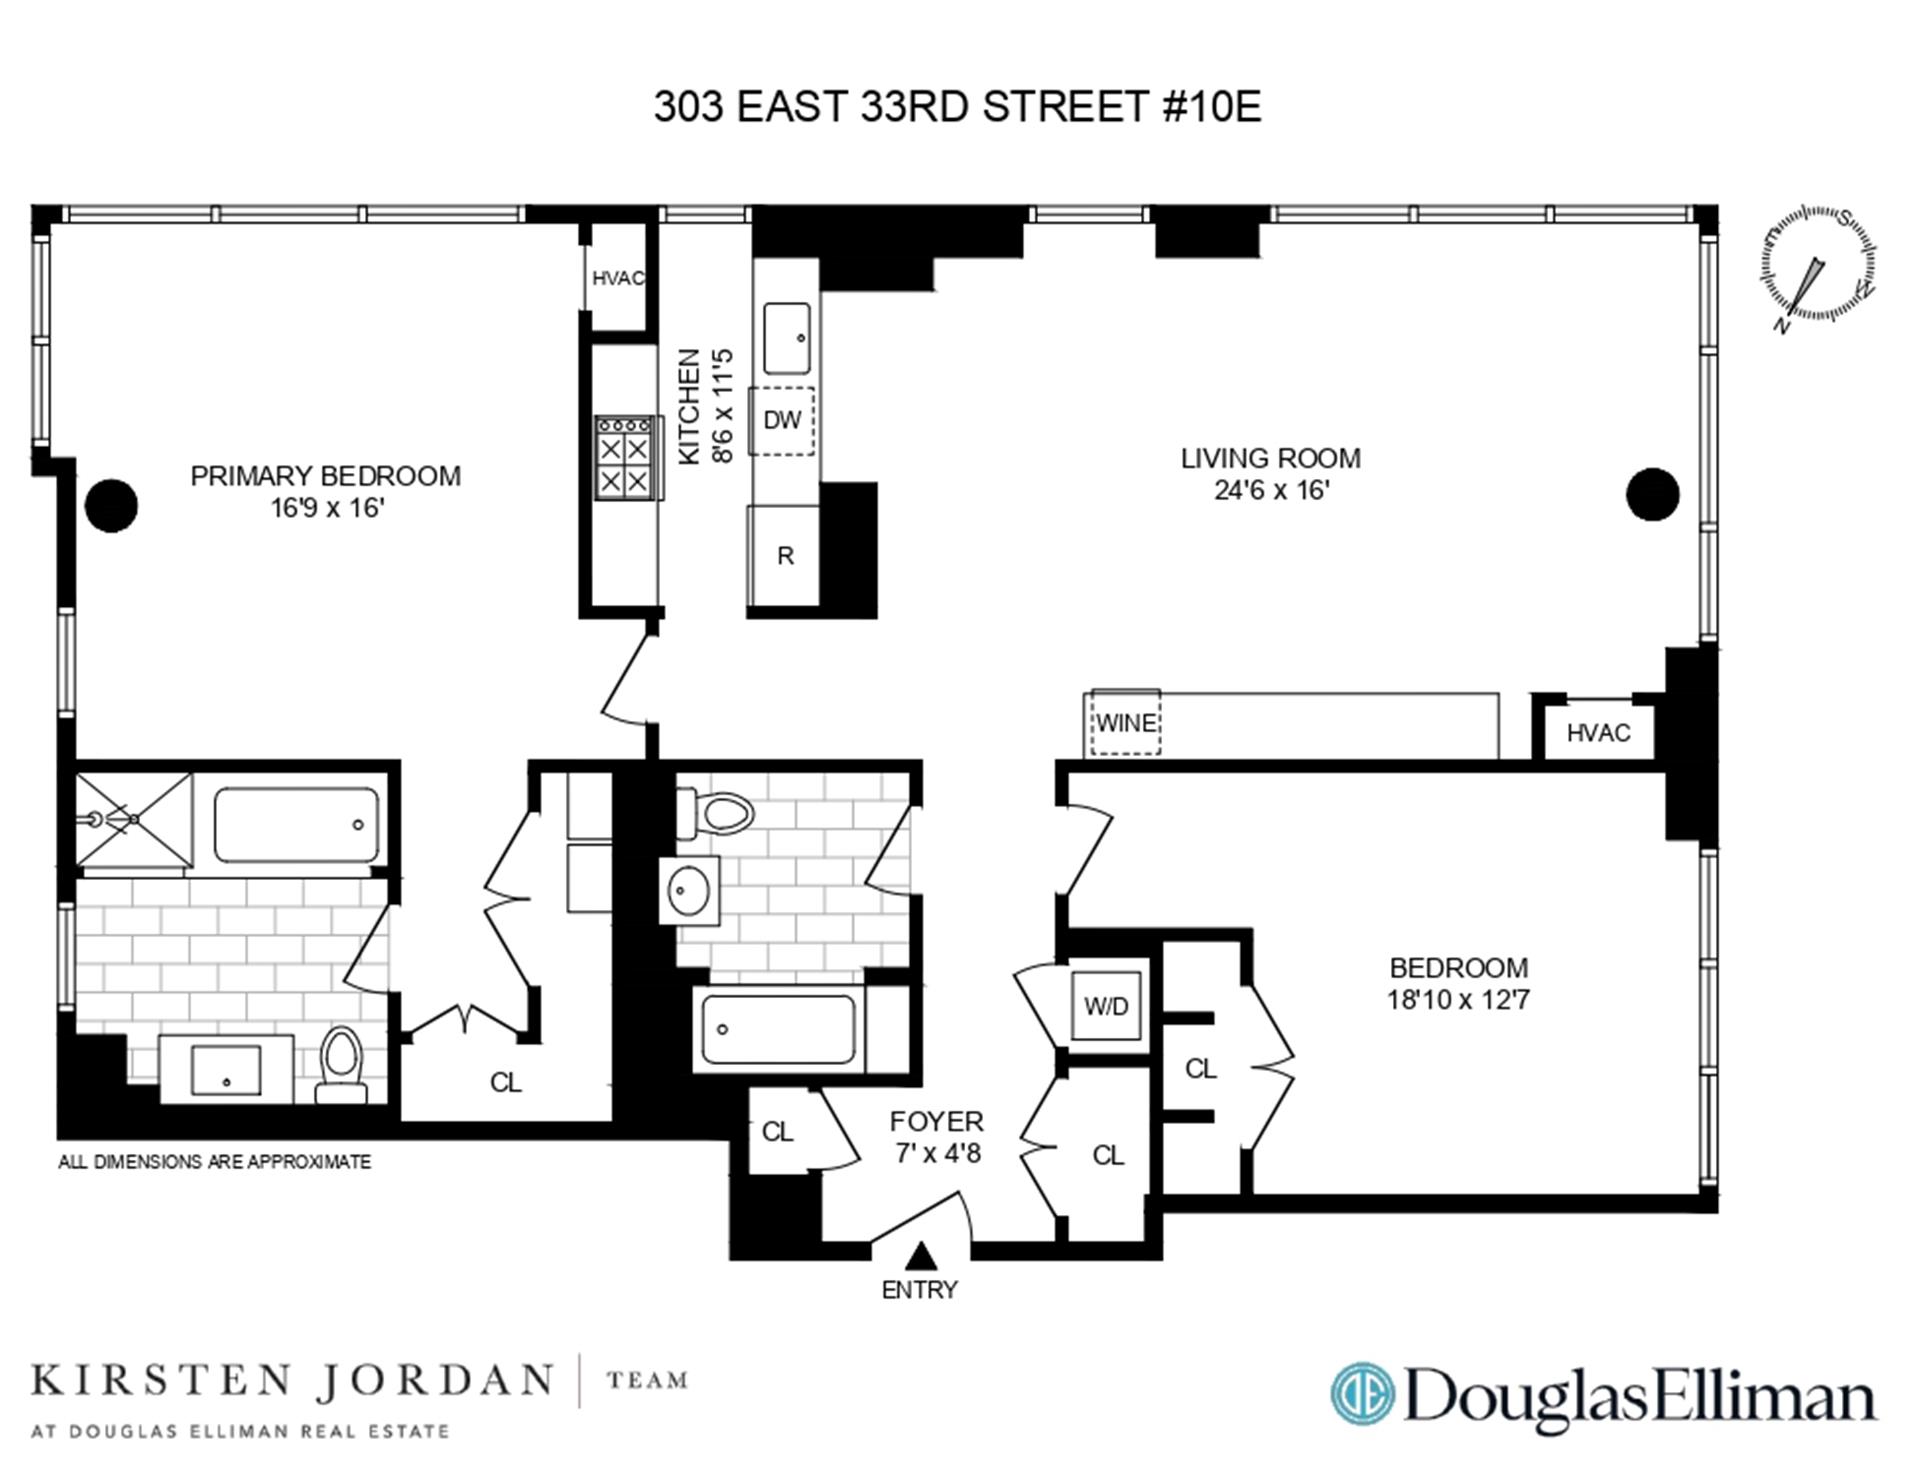 Floorplan for 303 East 33rd Street, 10E